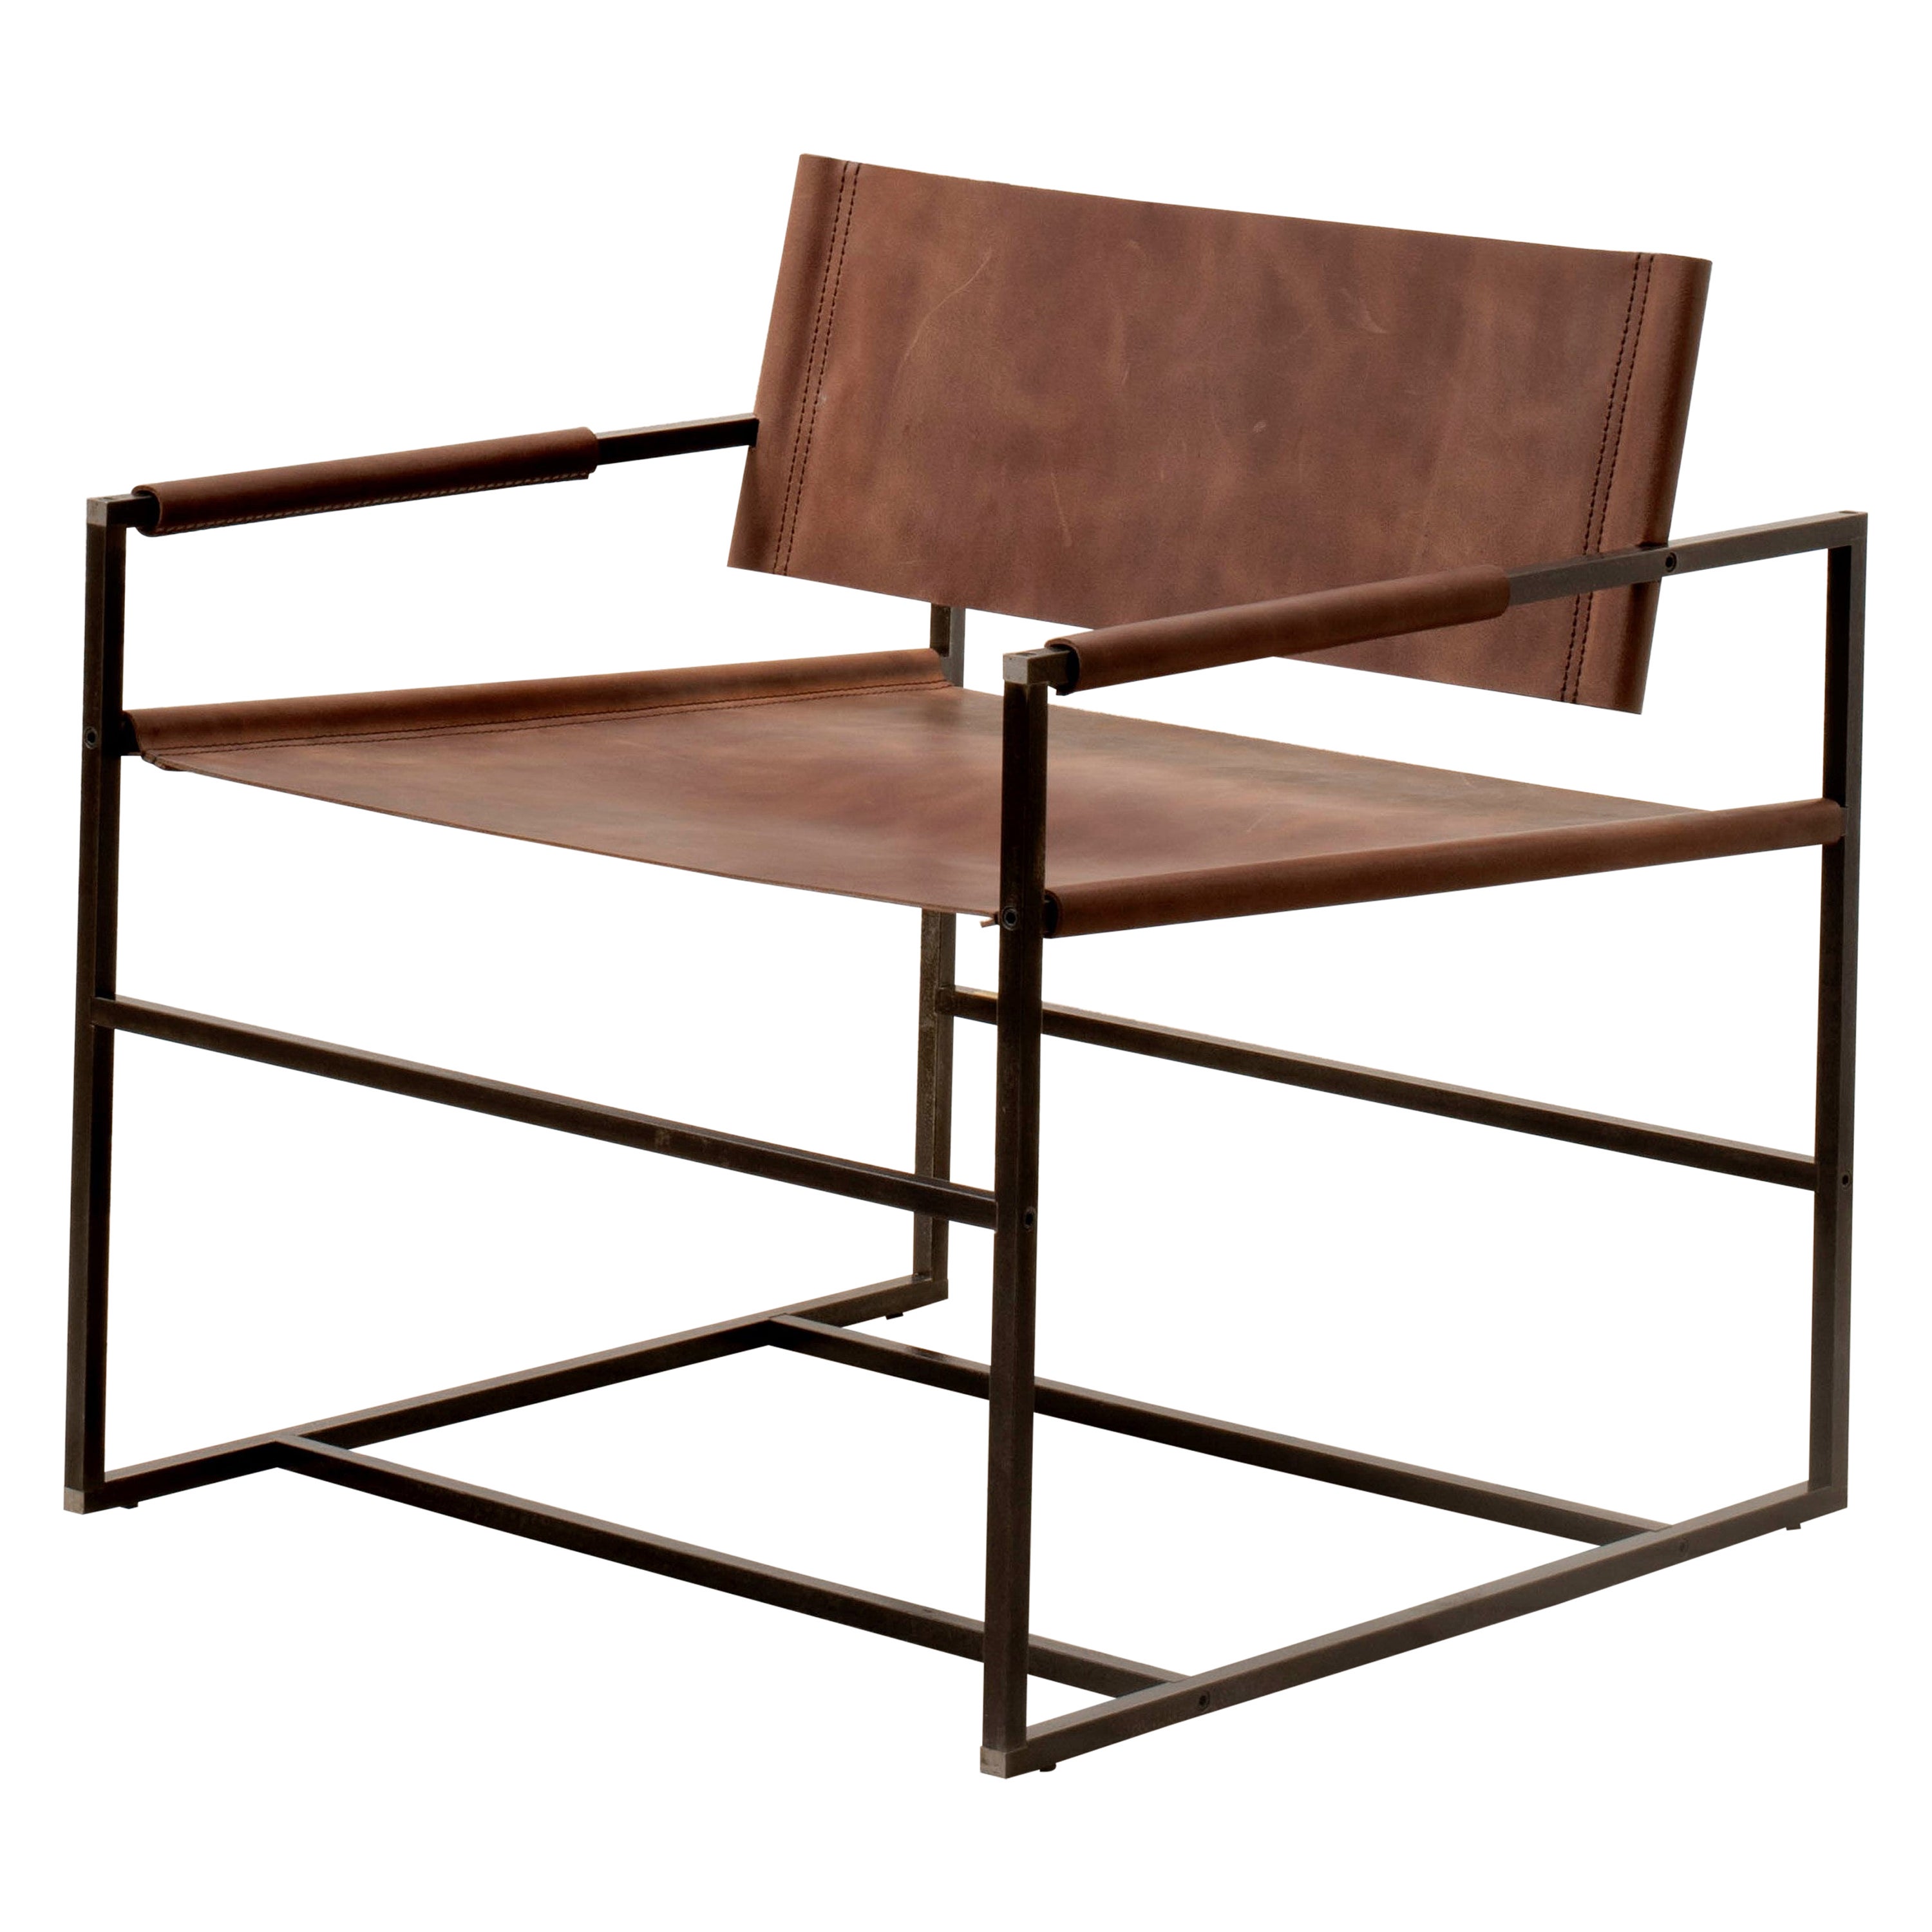  Sessel_01 ֻ minimalistischer Sessel, handgefertigt aus Leder und Stahl. 